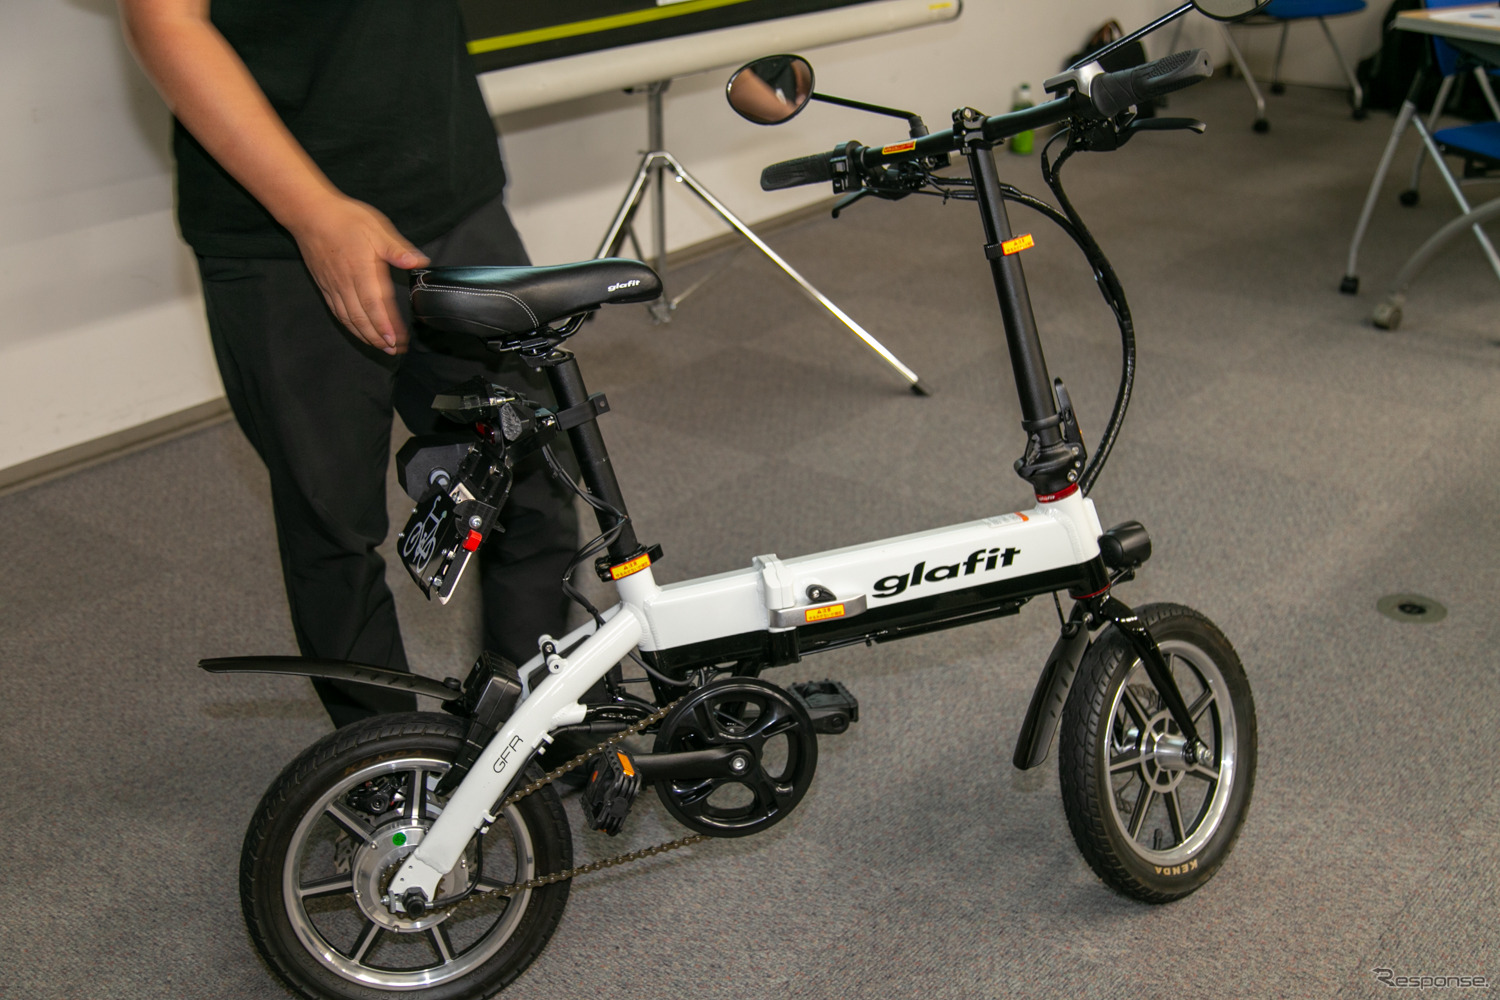 ハイブリッドバイク、「自転車」と「電動バイク」の切り替え可能に…グラフィット GFR に新技術等実証制度の認可